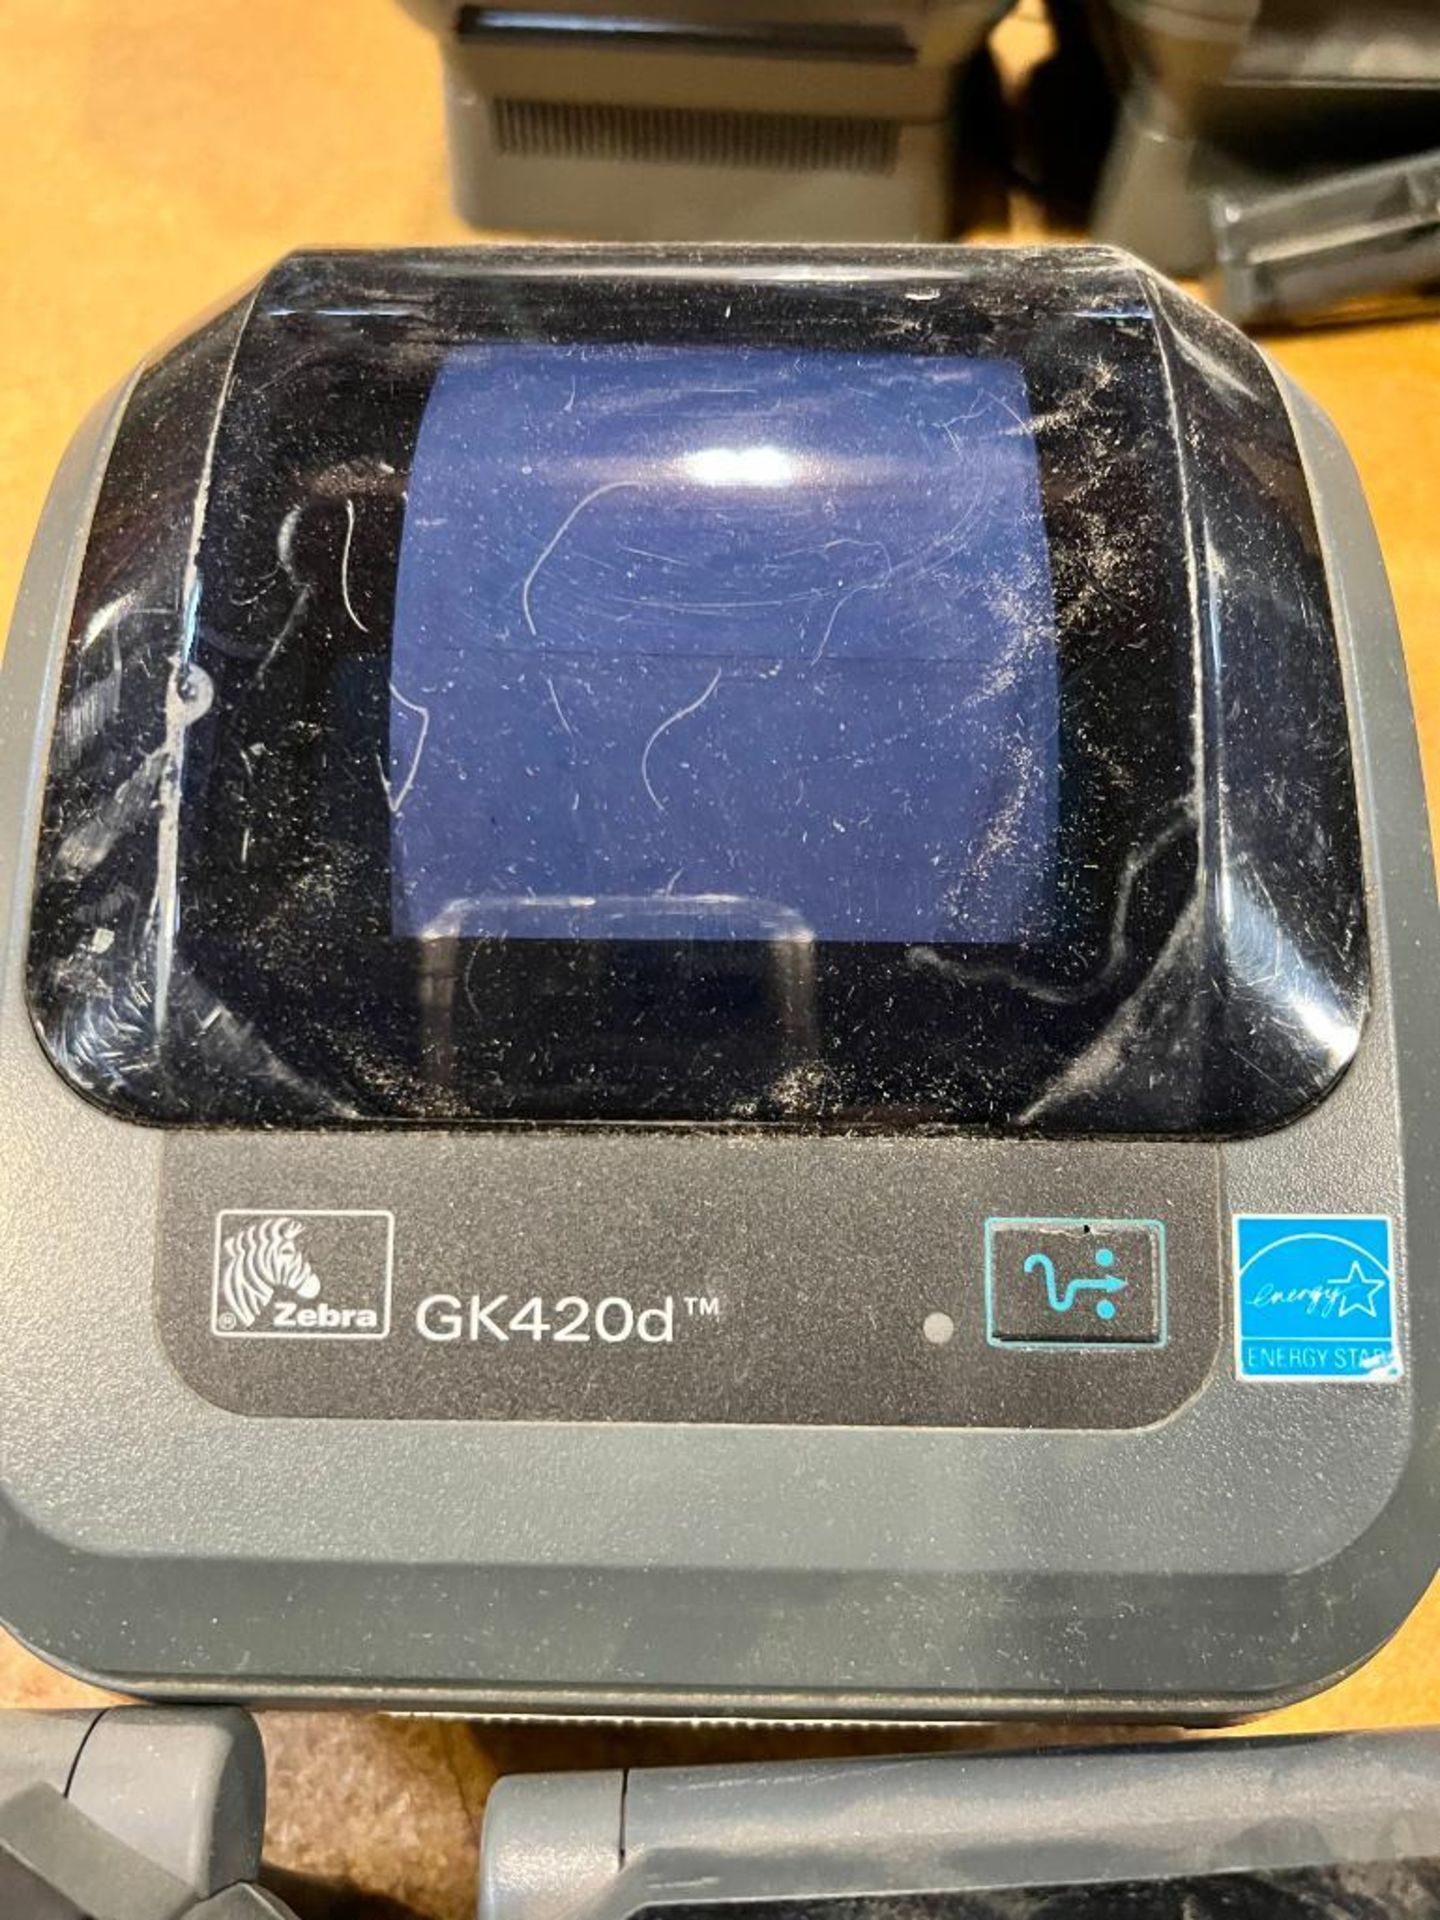 (New) Zebra Printer Model GK42OD - Image 4 of 4